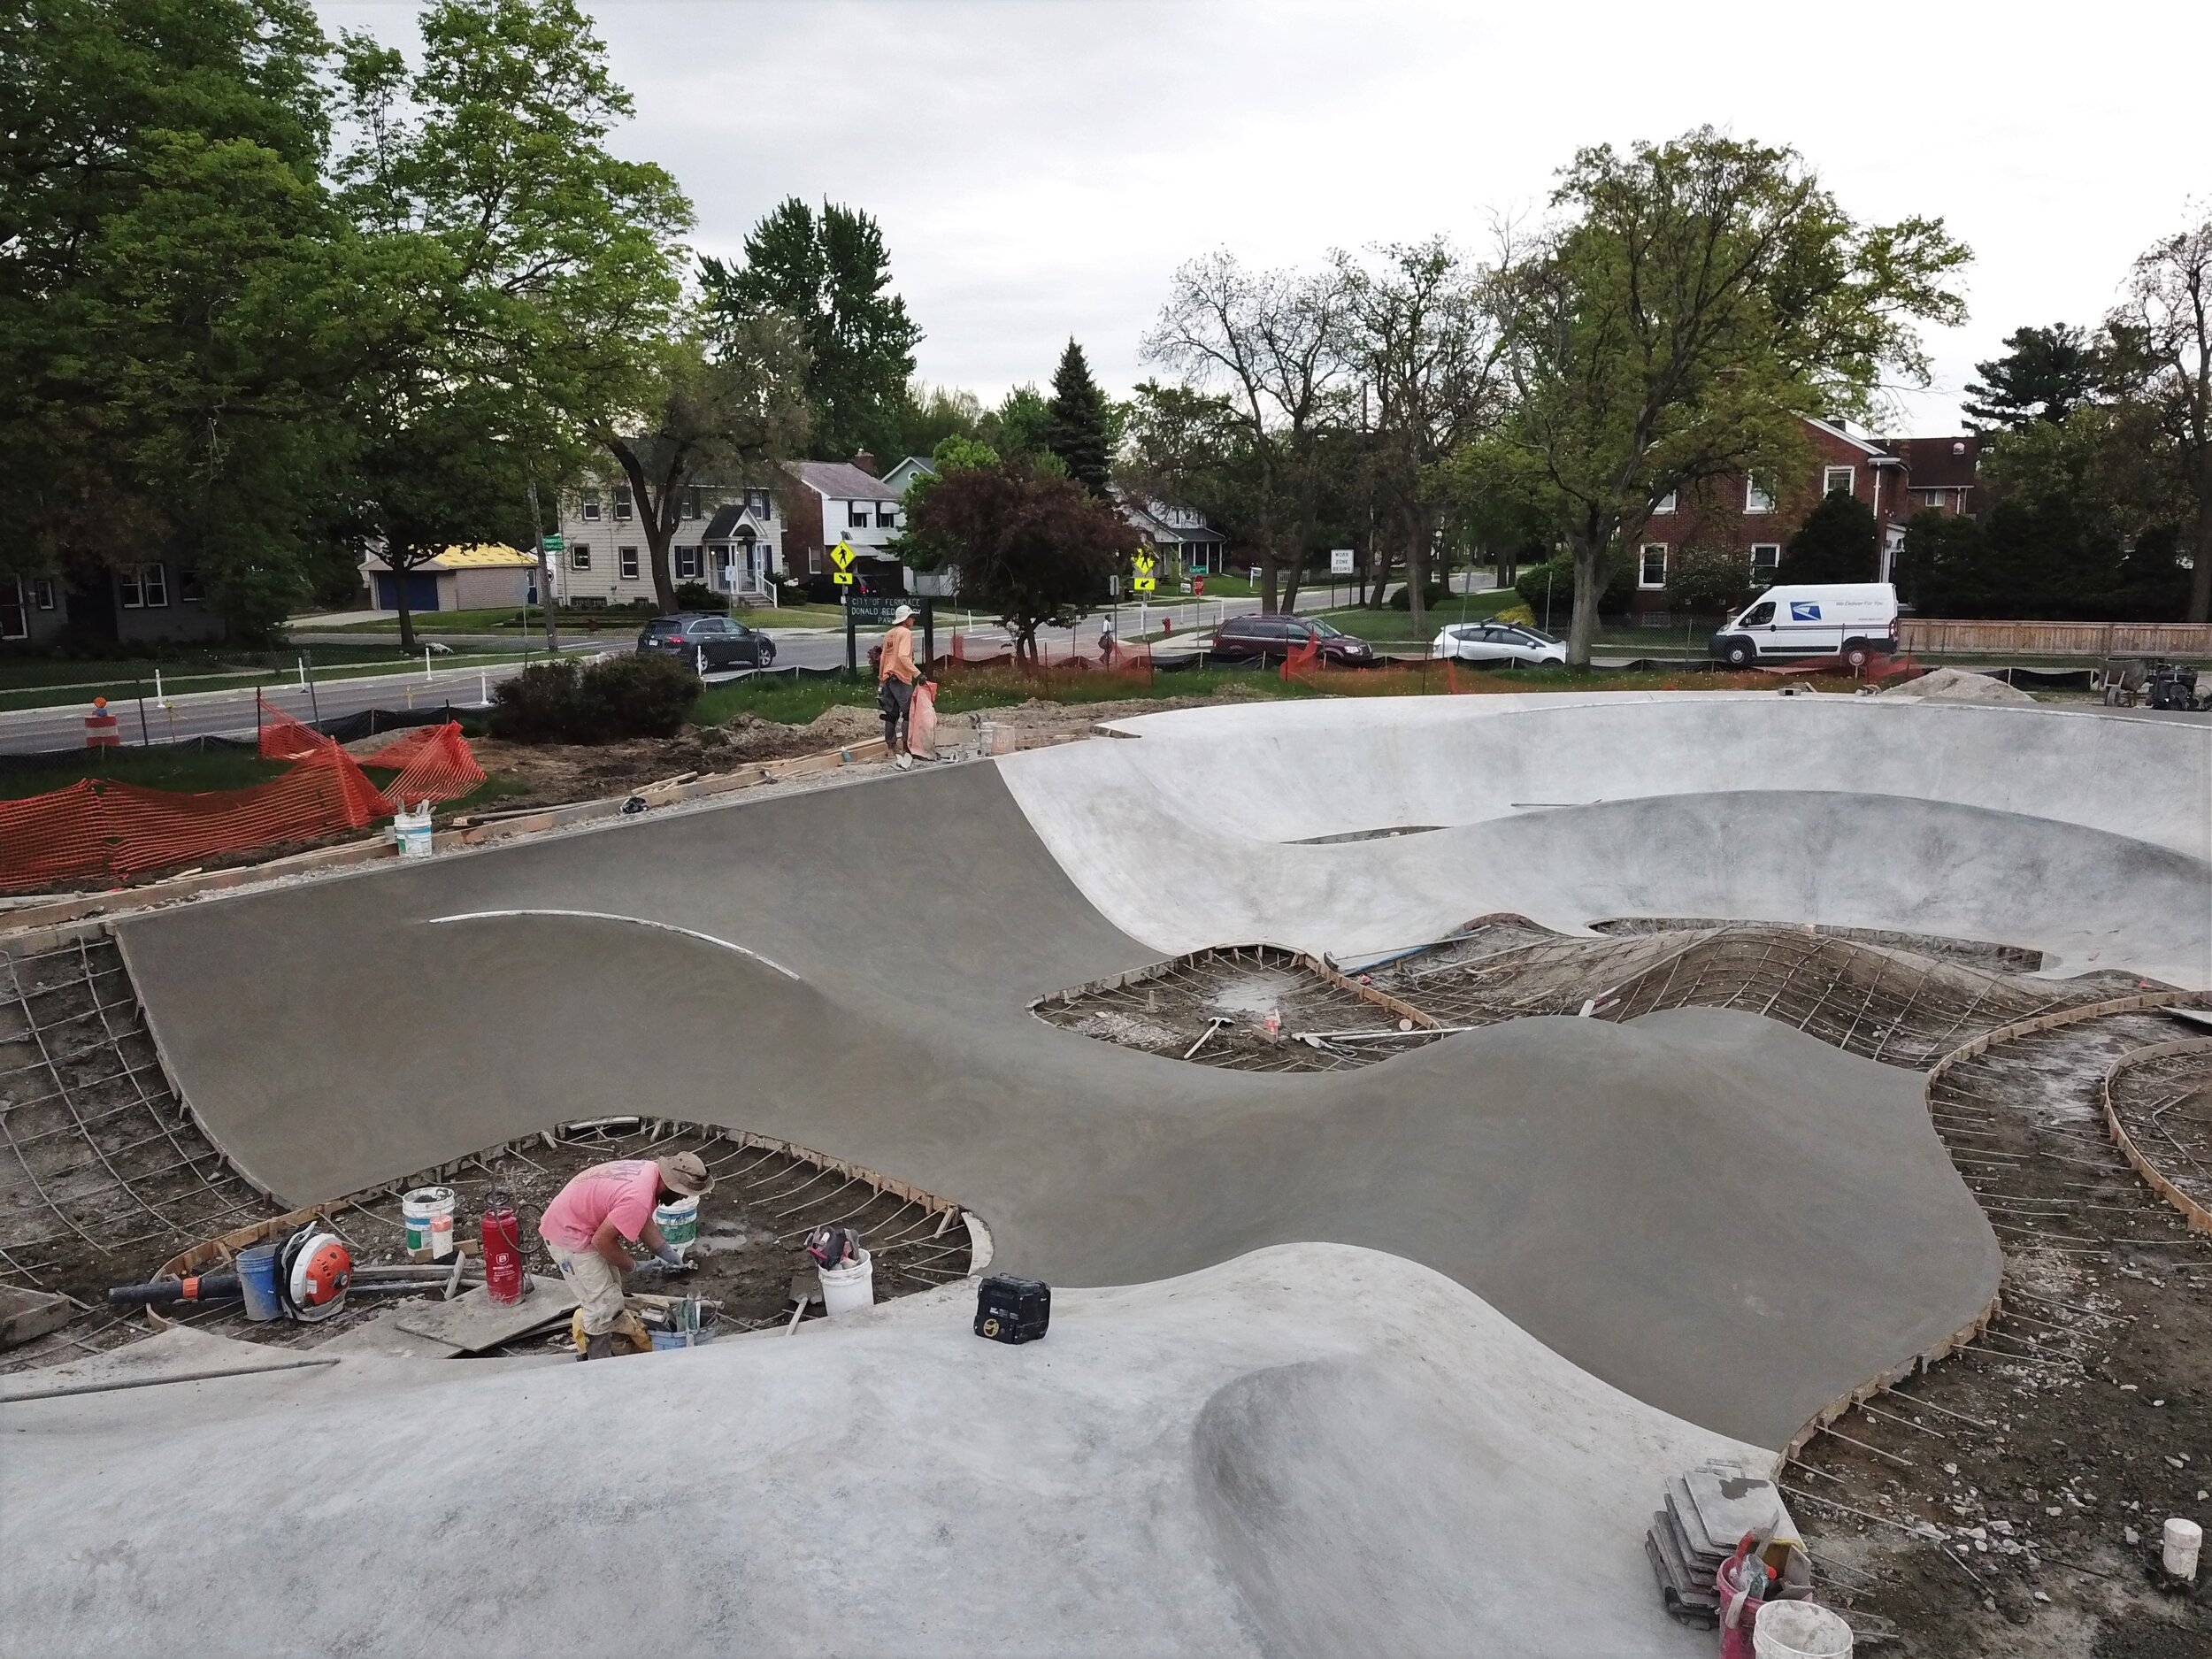 Ferndale, Michigan custom concrete 💪🏽 no cookie cutters here 😁